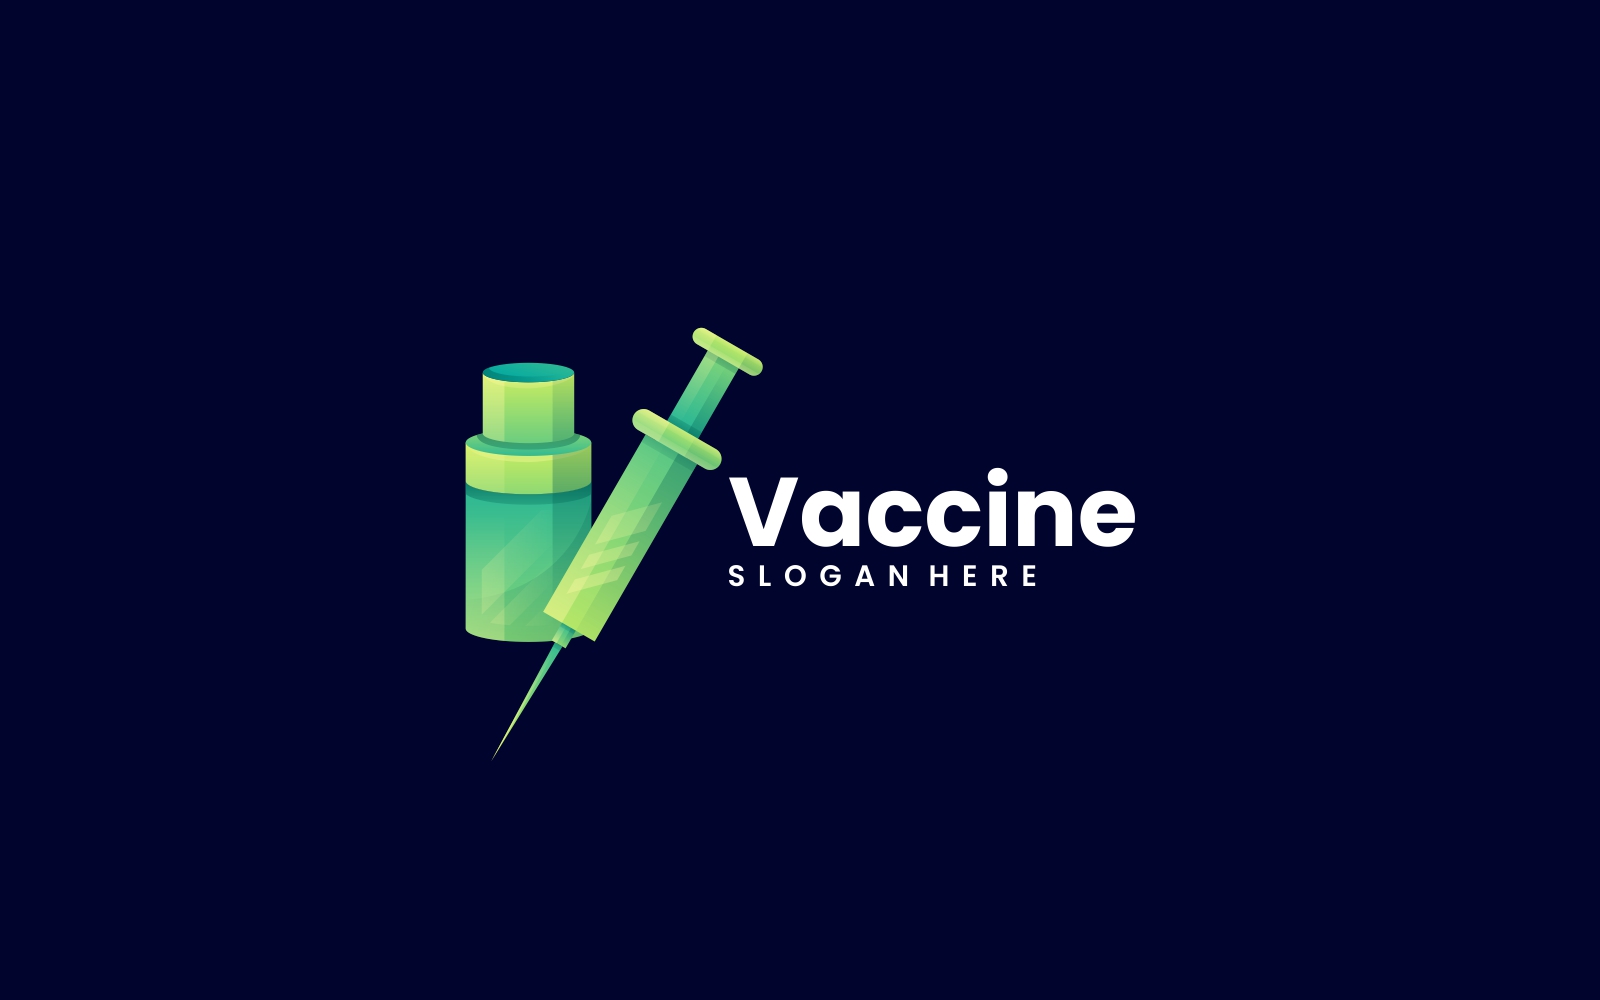 Vaccine Gradient Logo Style